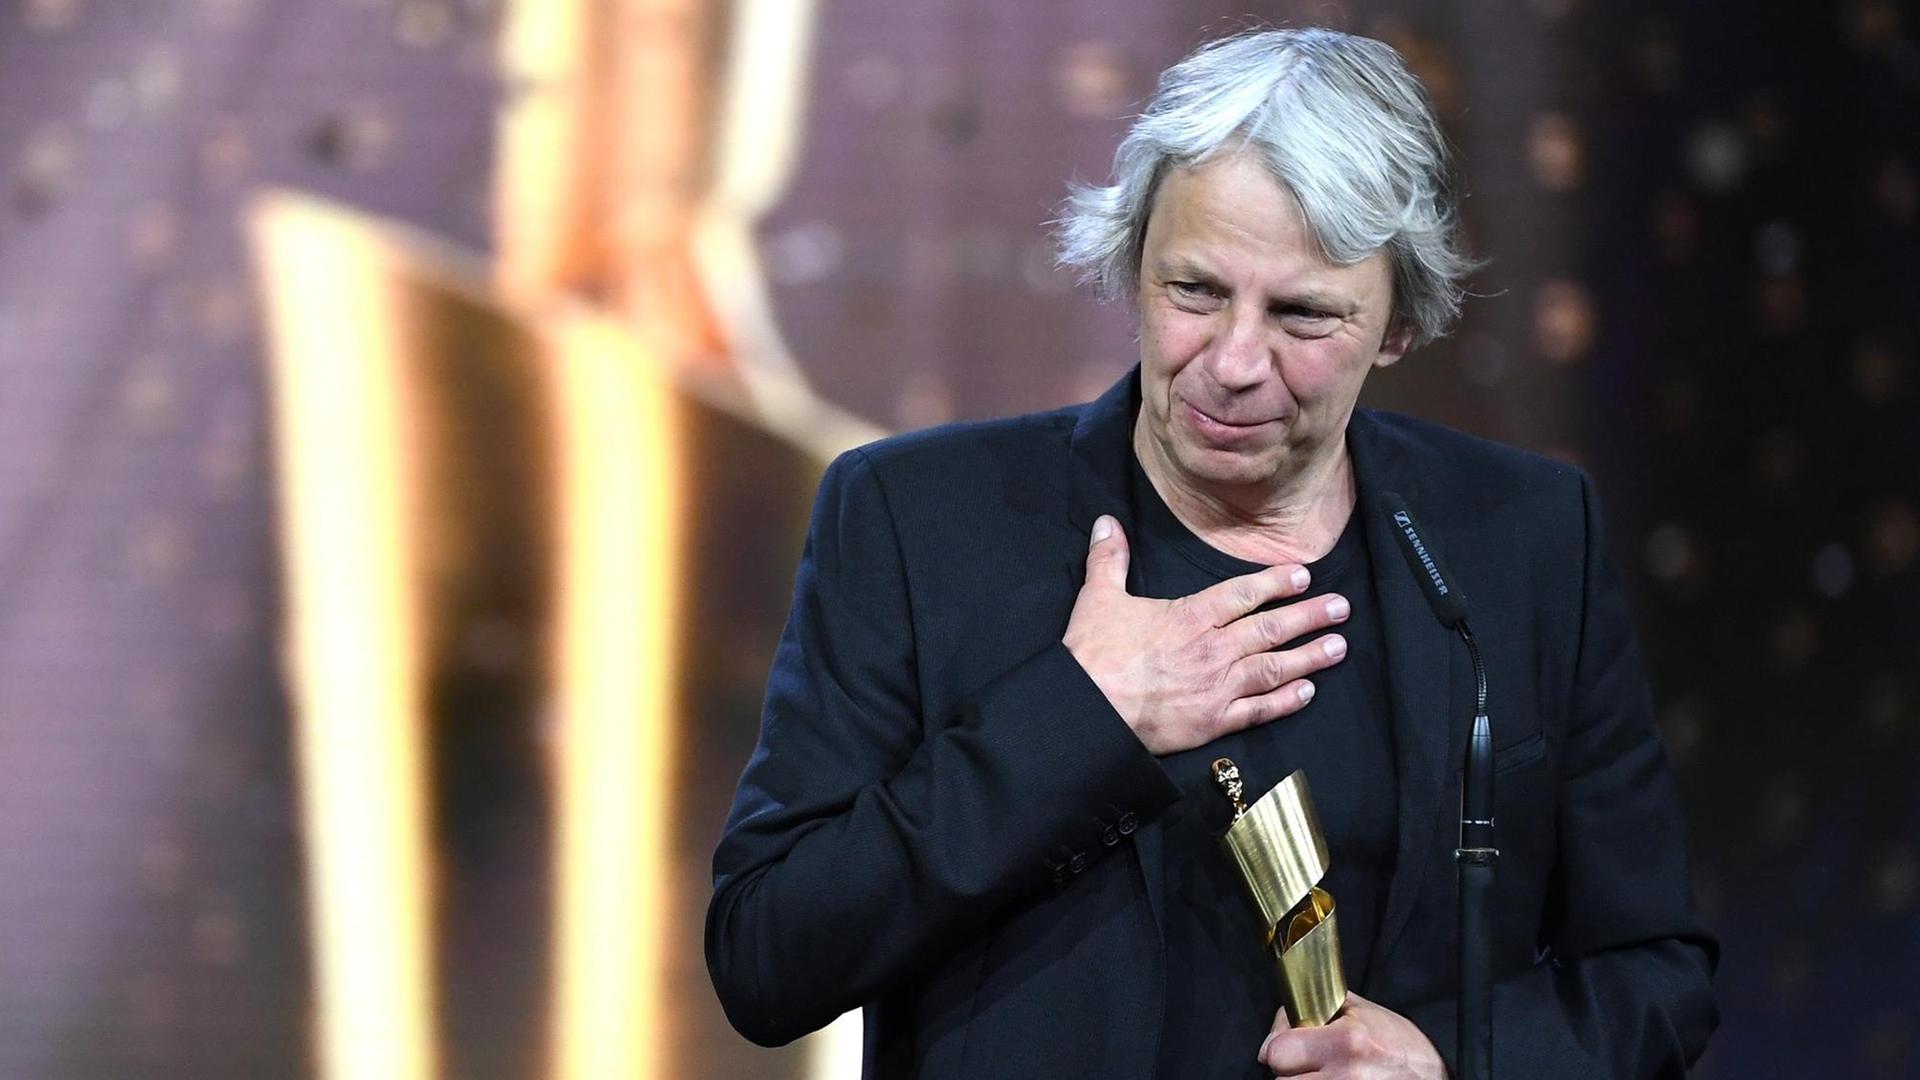 Regisseur Andreas Dresen zeigt sich gerührt auf der Bühne bei der Verleihung des 69. Deutschen Filmpreises "Lola".